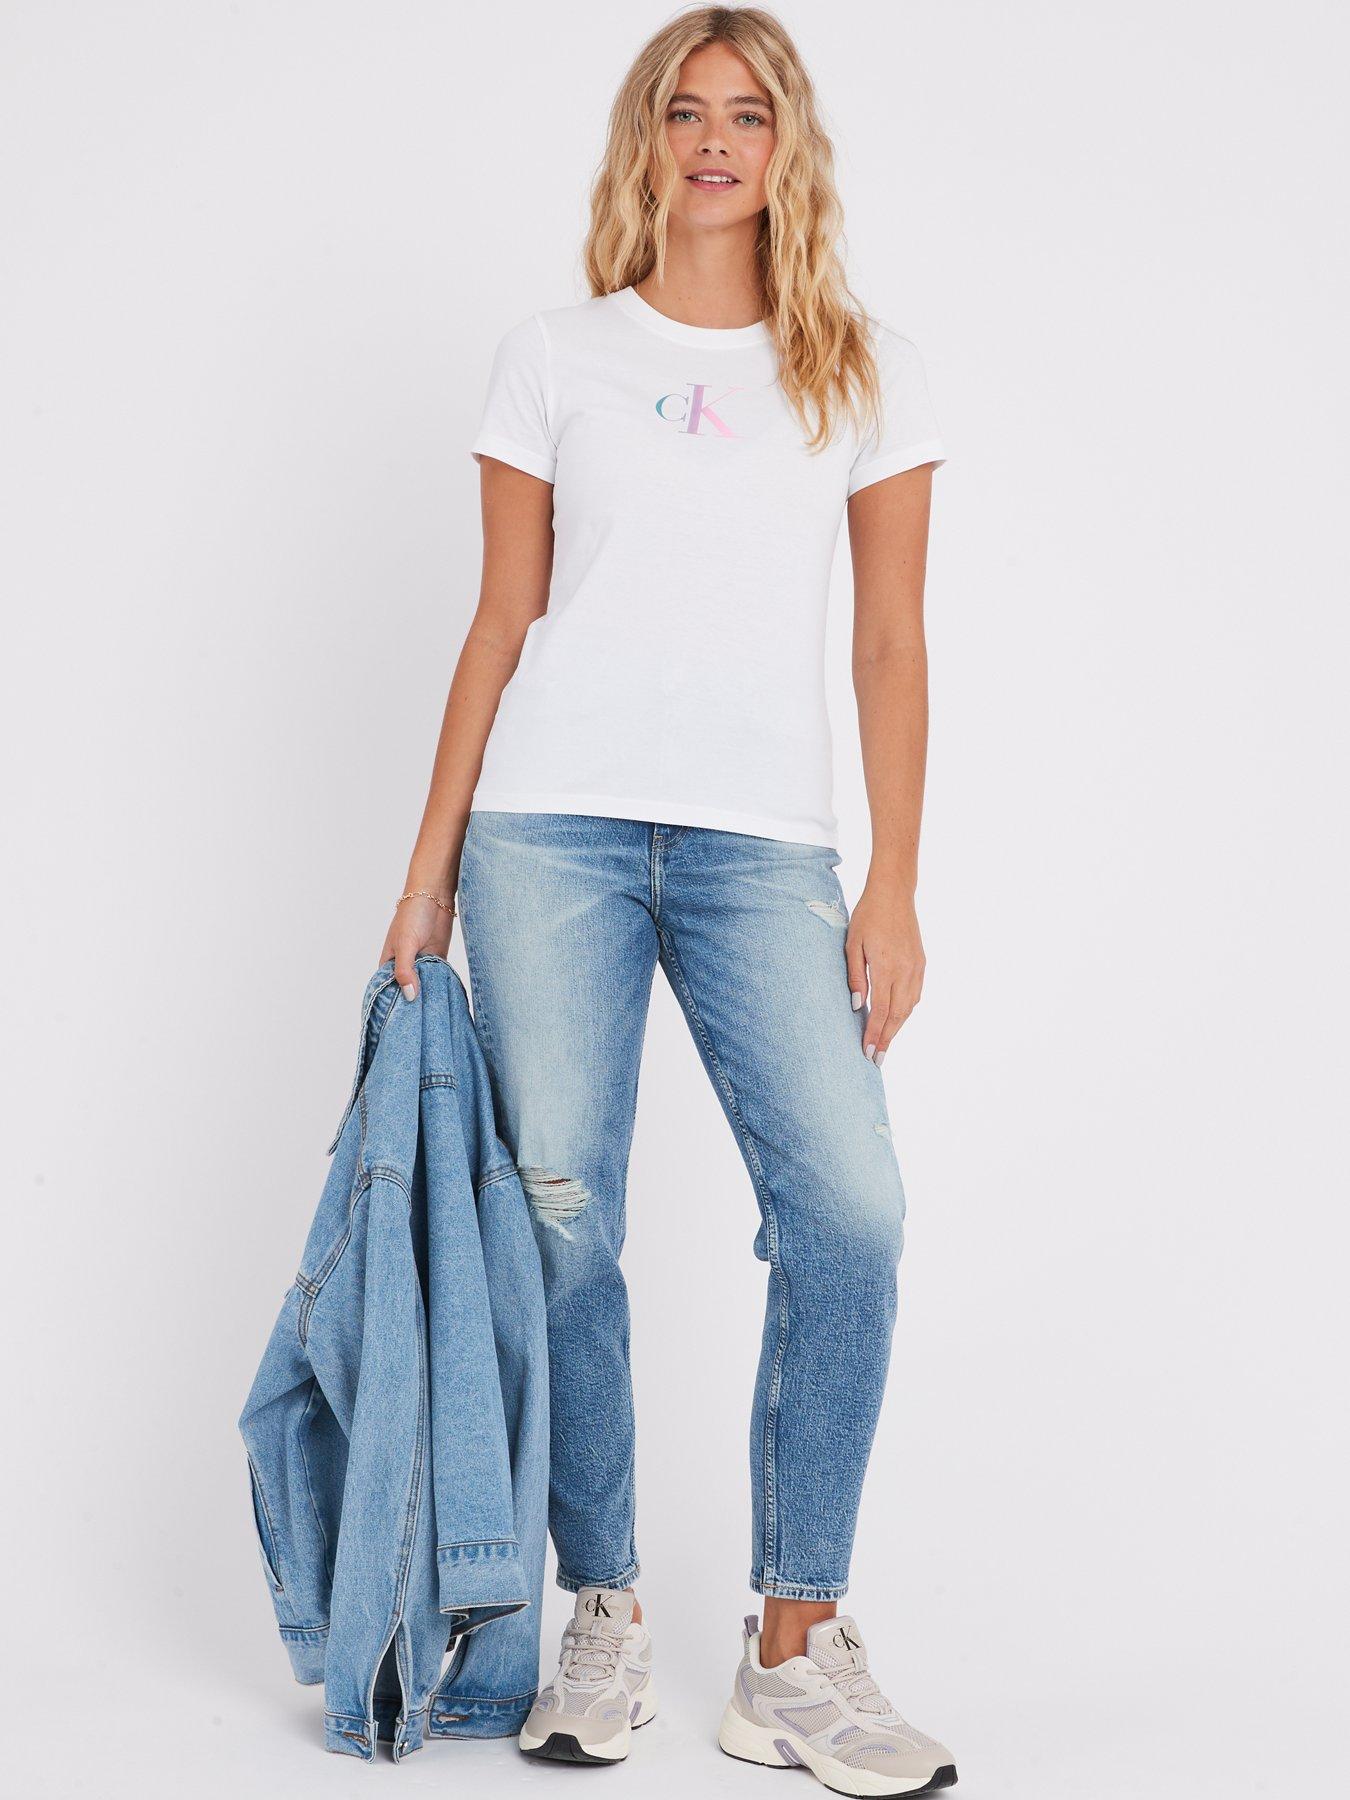 Calvin Klein Jeans, Bottoms, 4 For 2 Calvin Klein Girls Leggings Size 1416